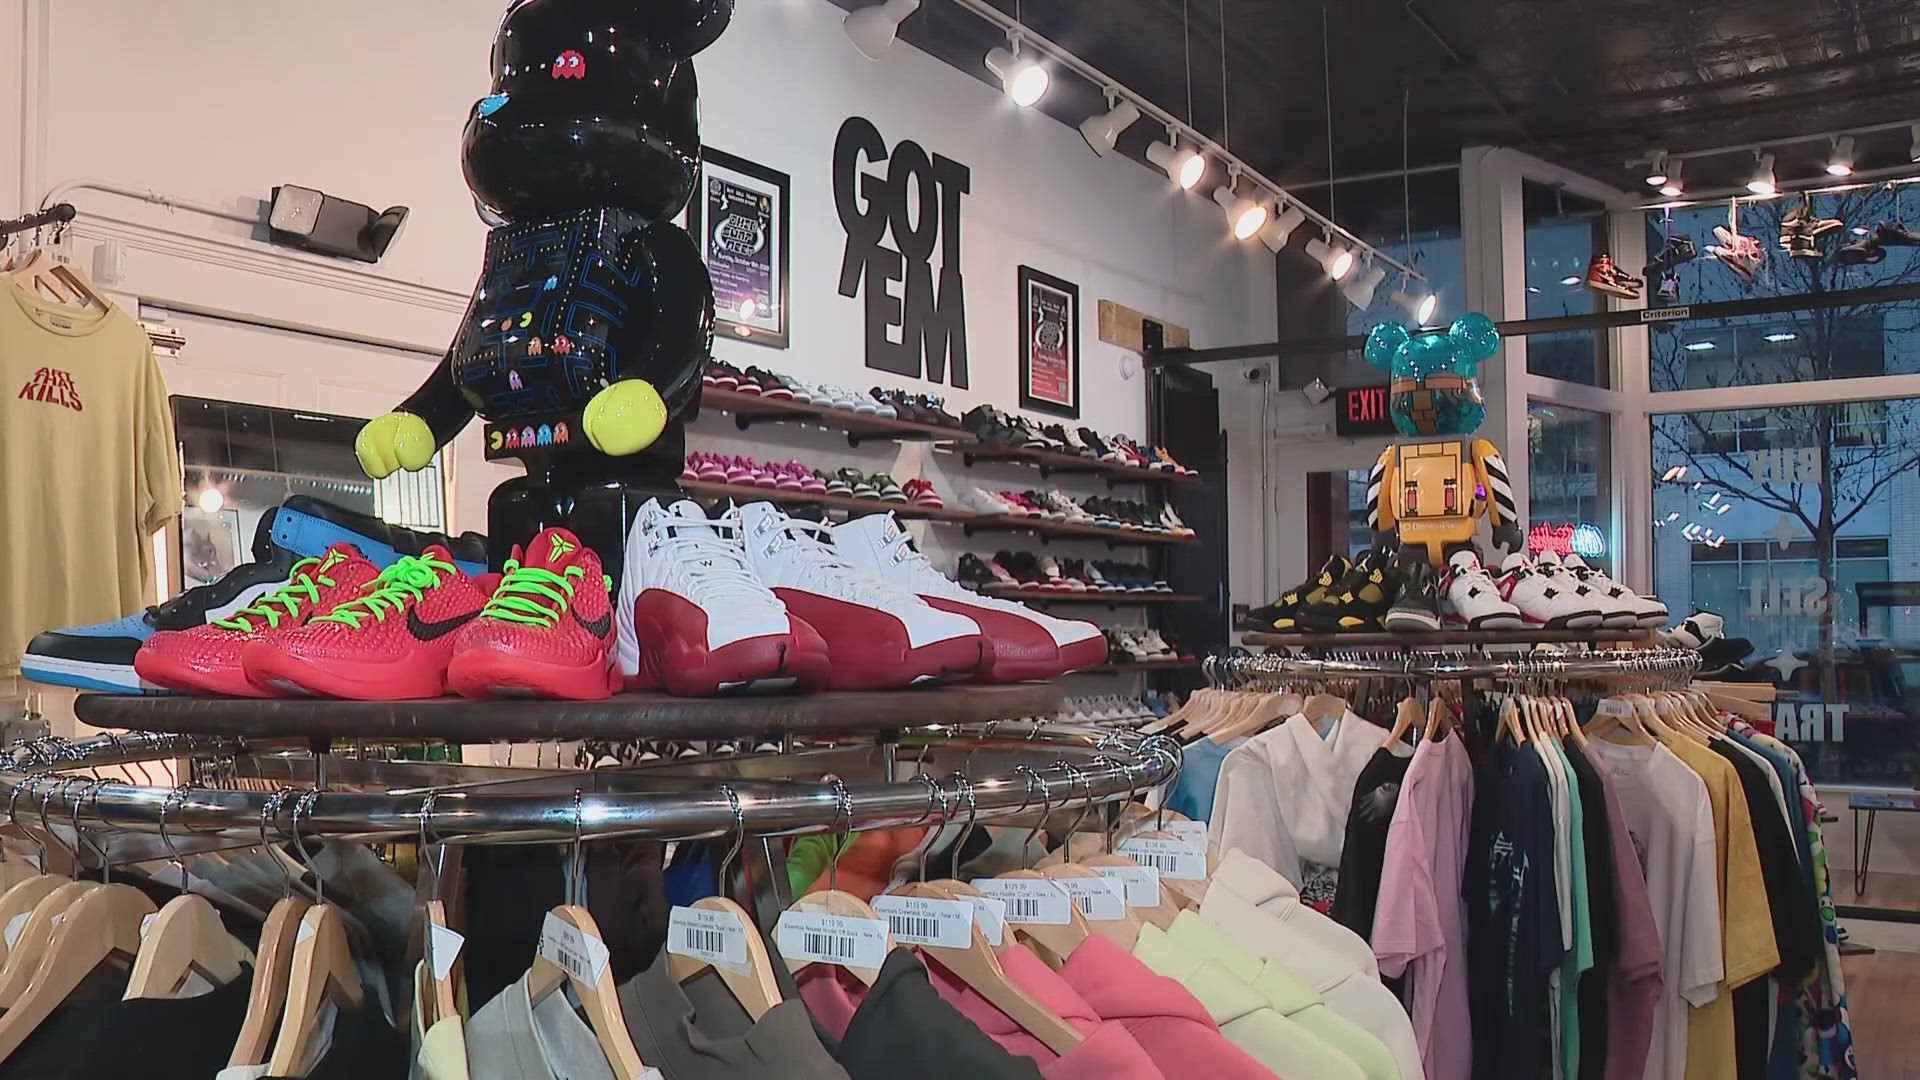 614Sneaker owner Brody Smith said around $4,000 worth of merchandise was stolen.